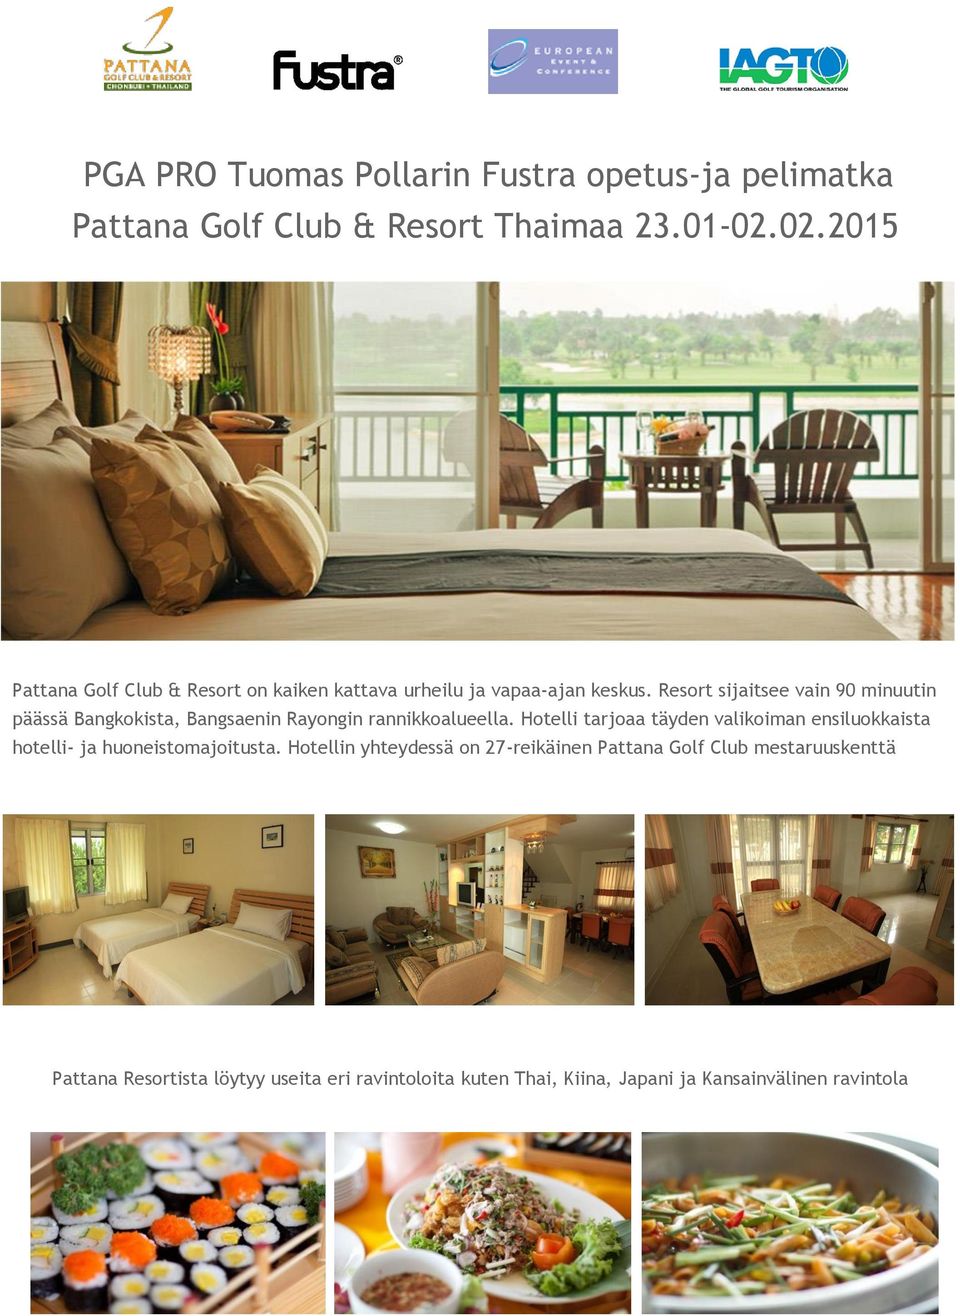 Resort sijaitsee vain 90 minuutin päässä Bangkokista, Bangsaenin Rayongin rannikkoalueella.